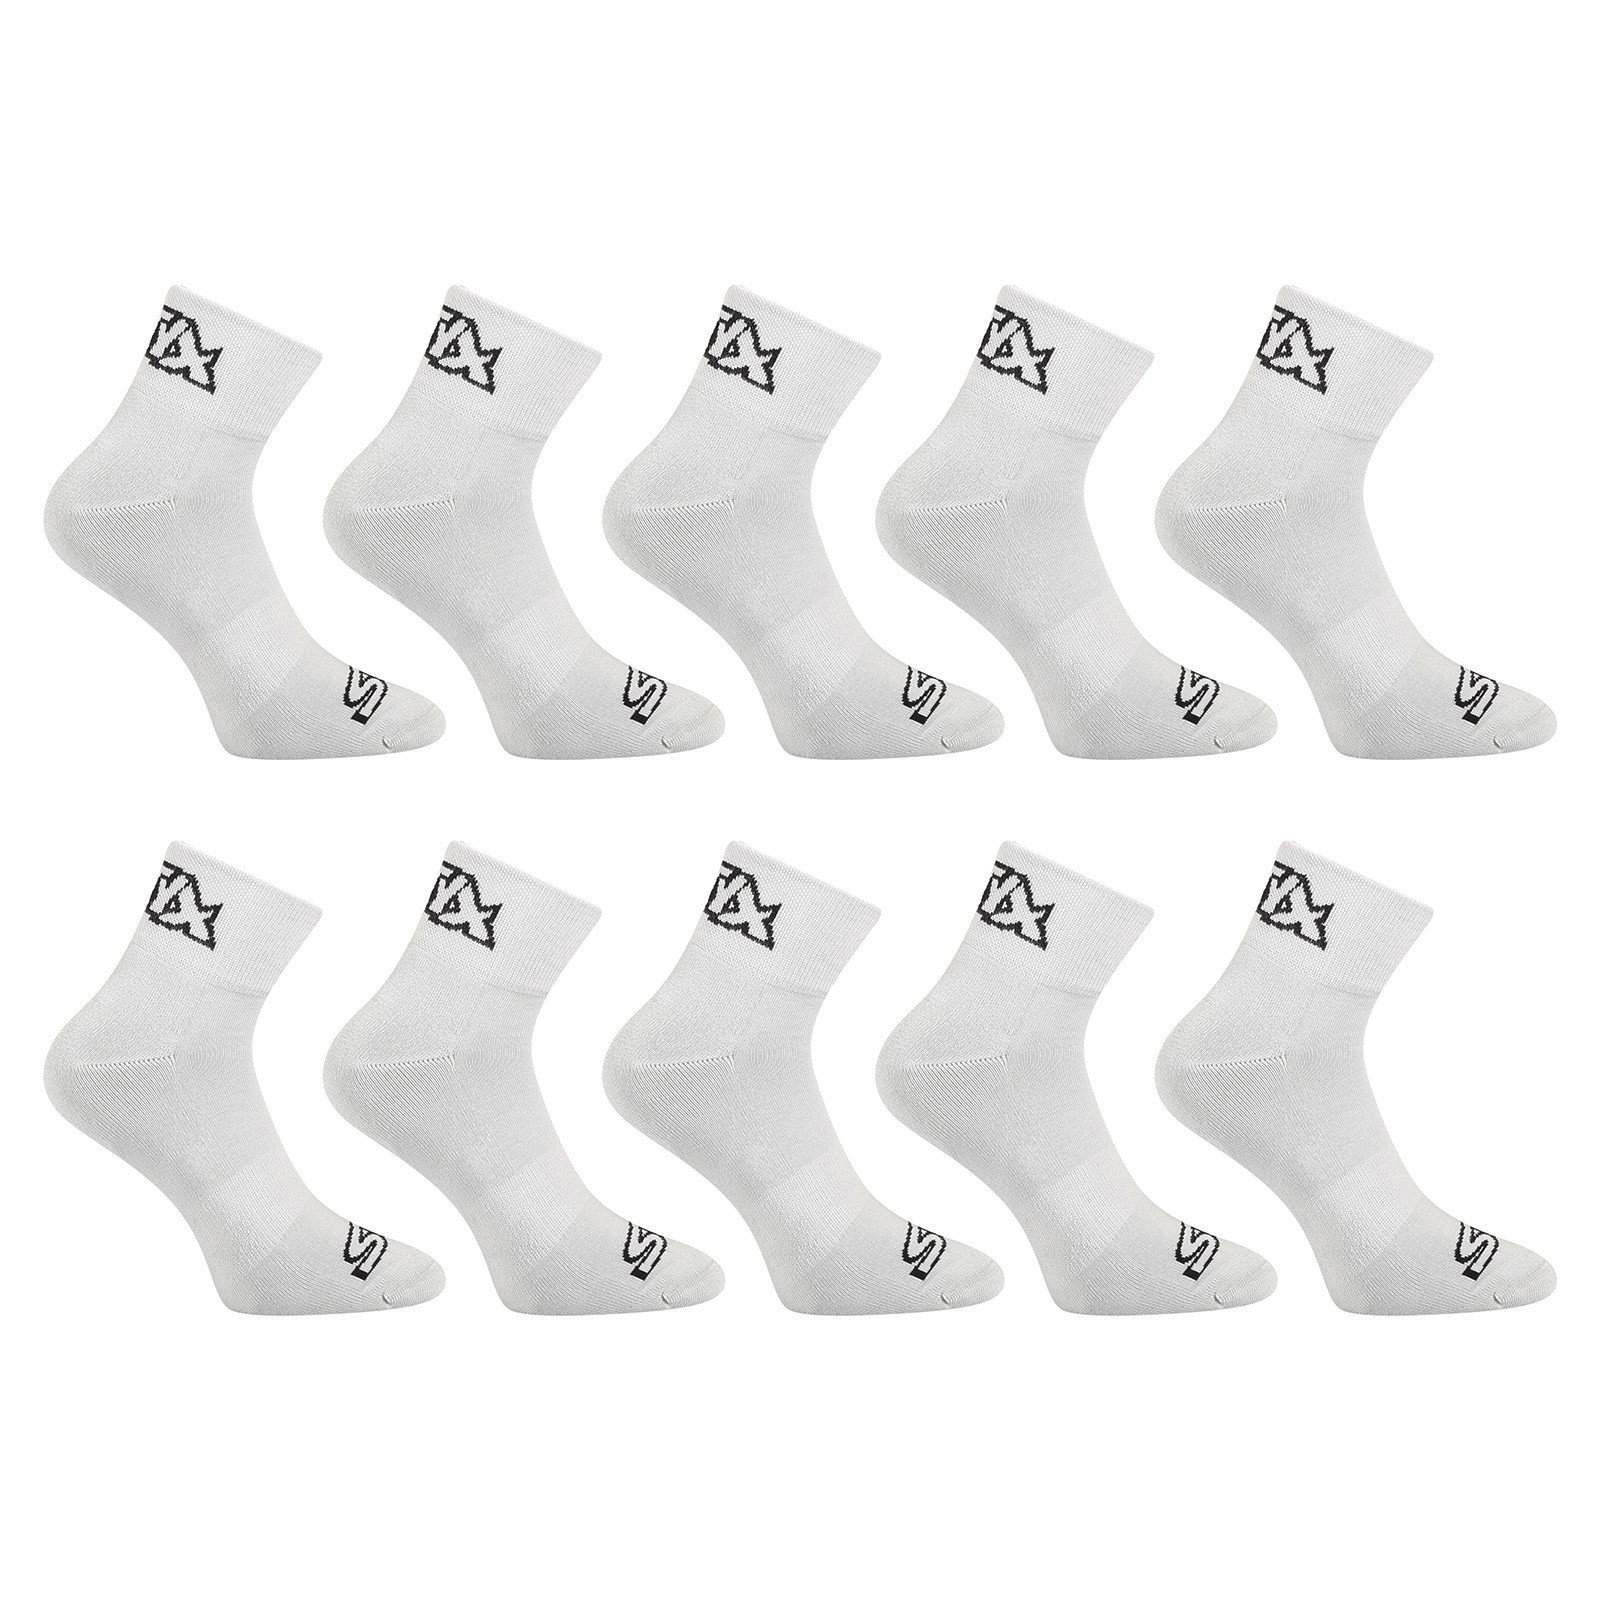 E-shop 10PACK ponožky Styx kotníkové šedé